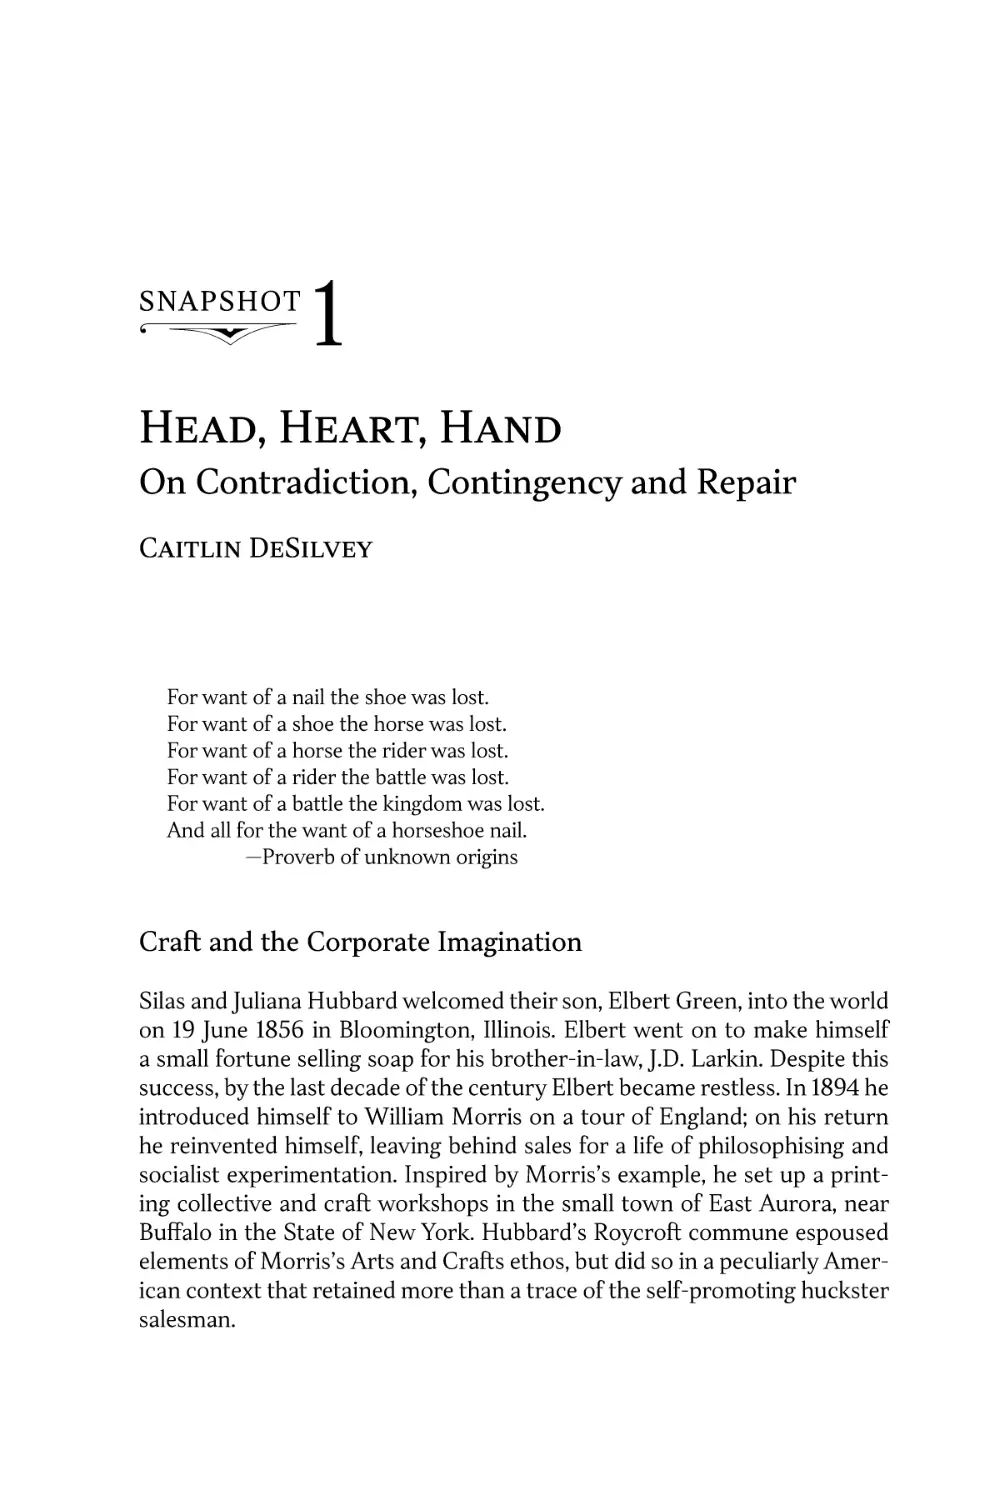 Snapshot 1. Head, Heart, Hand